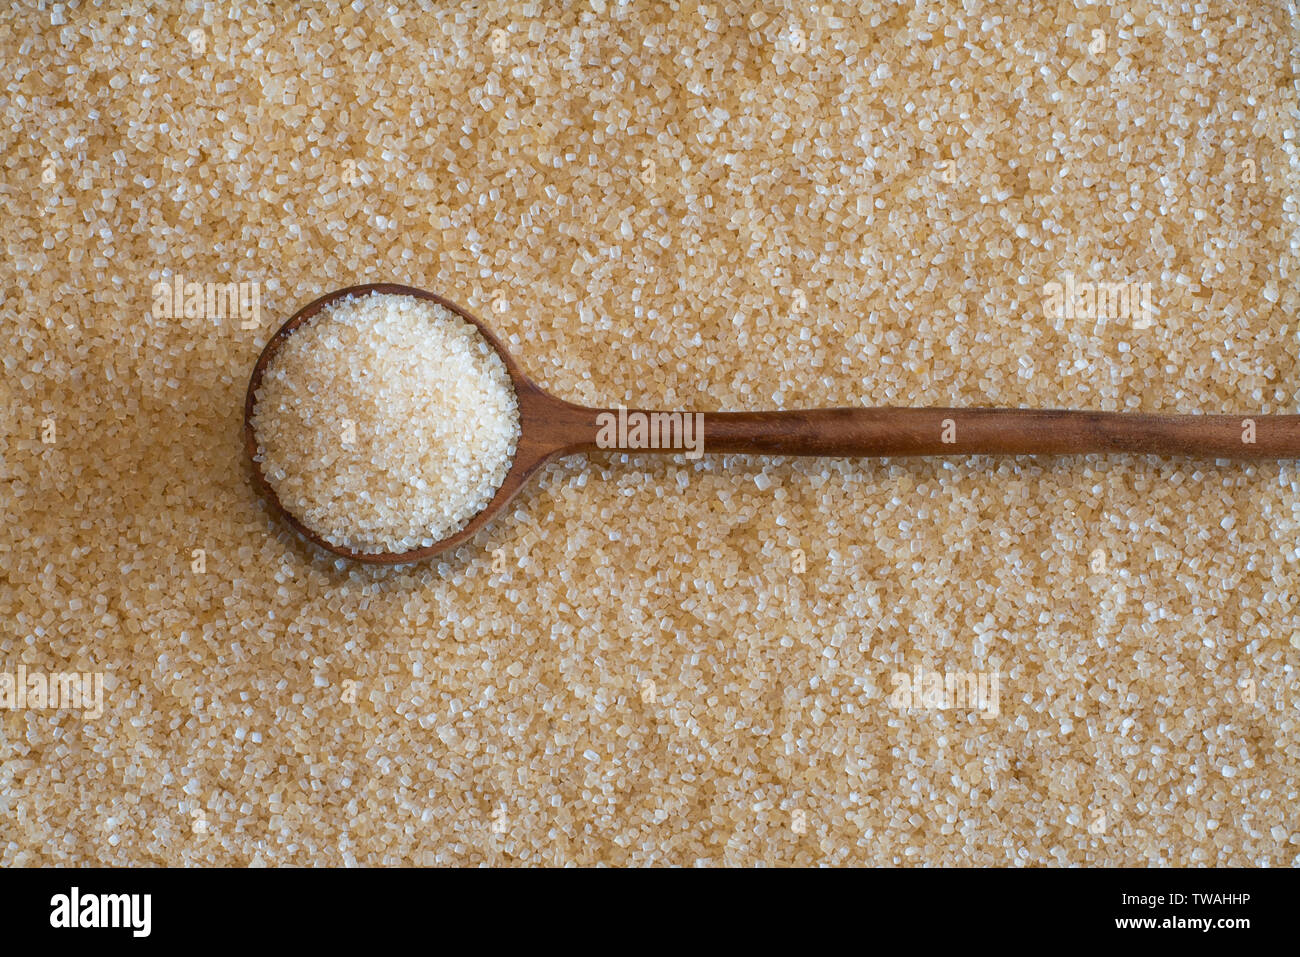 Brauner Zucker, als meinen viele in eine gesündere Alternative zu Weißzucker, erhält es reichen dunklen goldene Farbe aus Melasse. Stockfoto